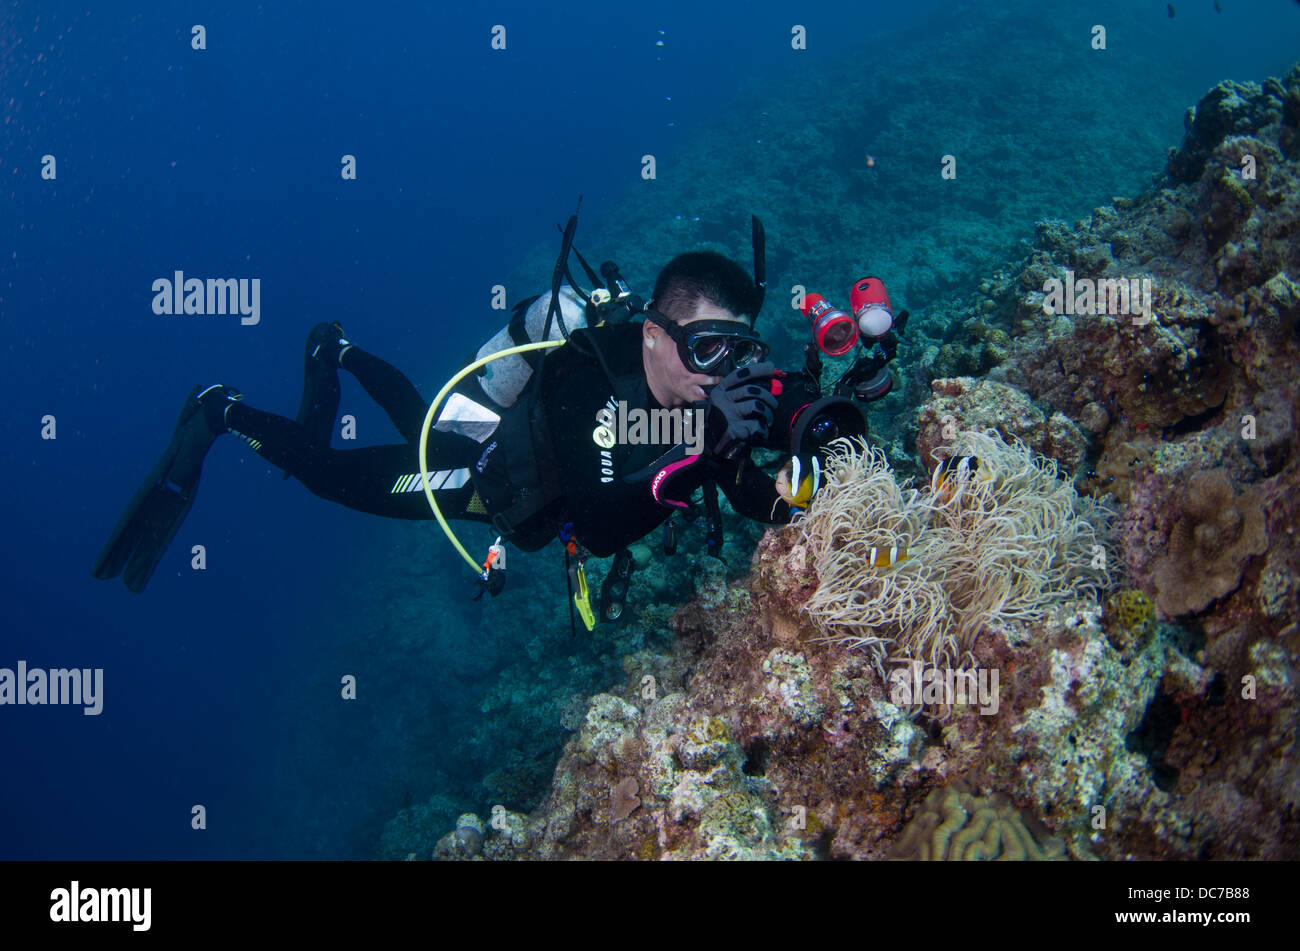 Photographe plongeur autonome de prendre des photos sous l'eau, Cap Maeda, Okinawa Banque D'Images